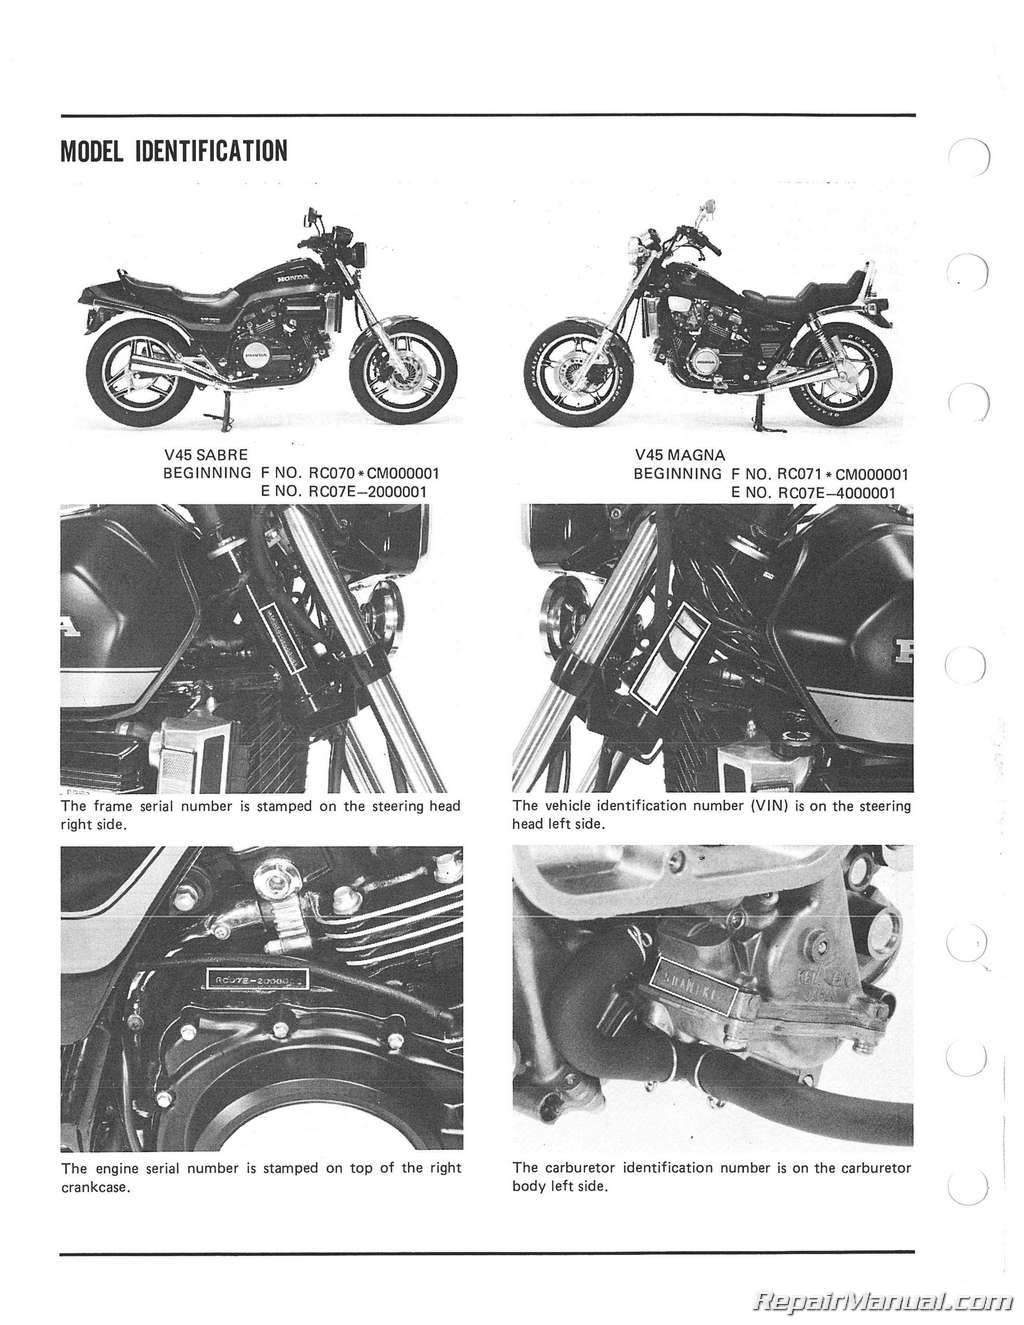 1984 Honda magna vf700c owners manual #6